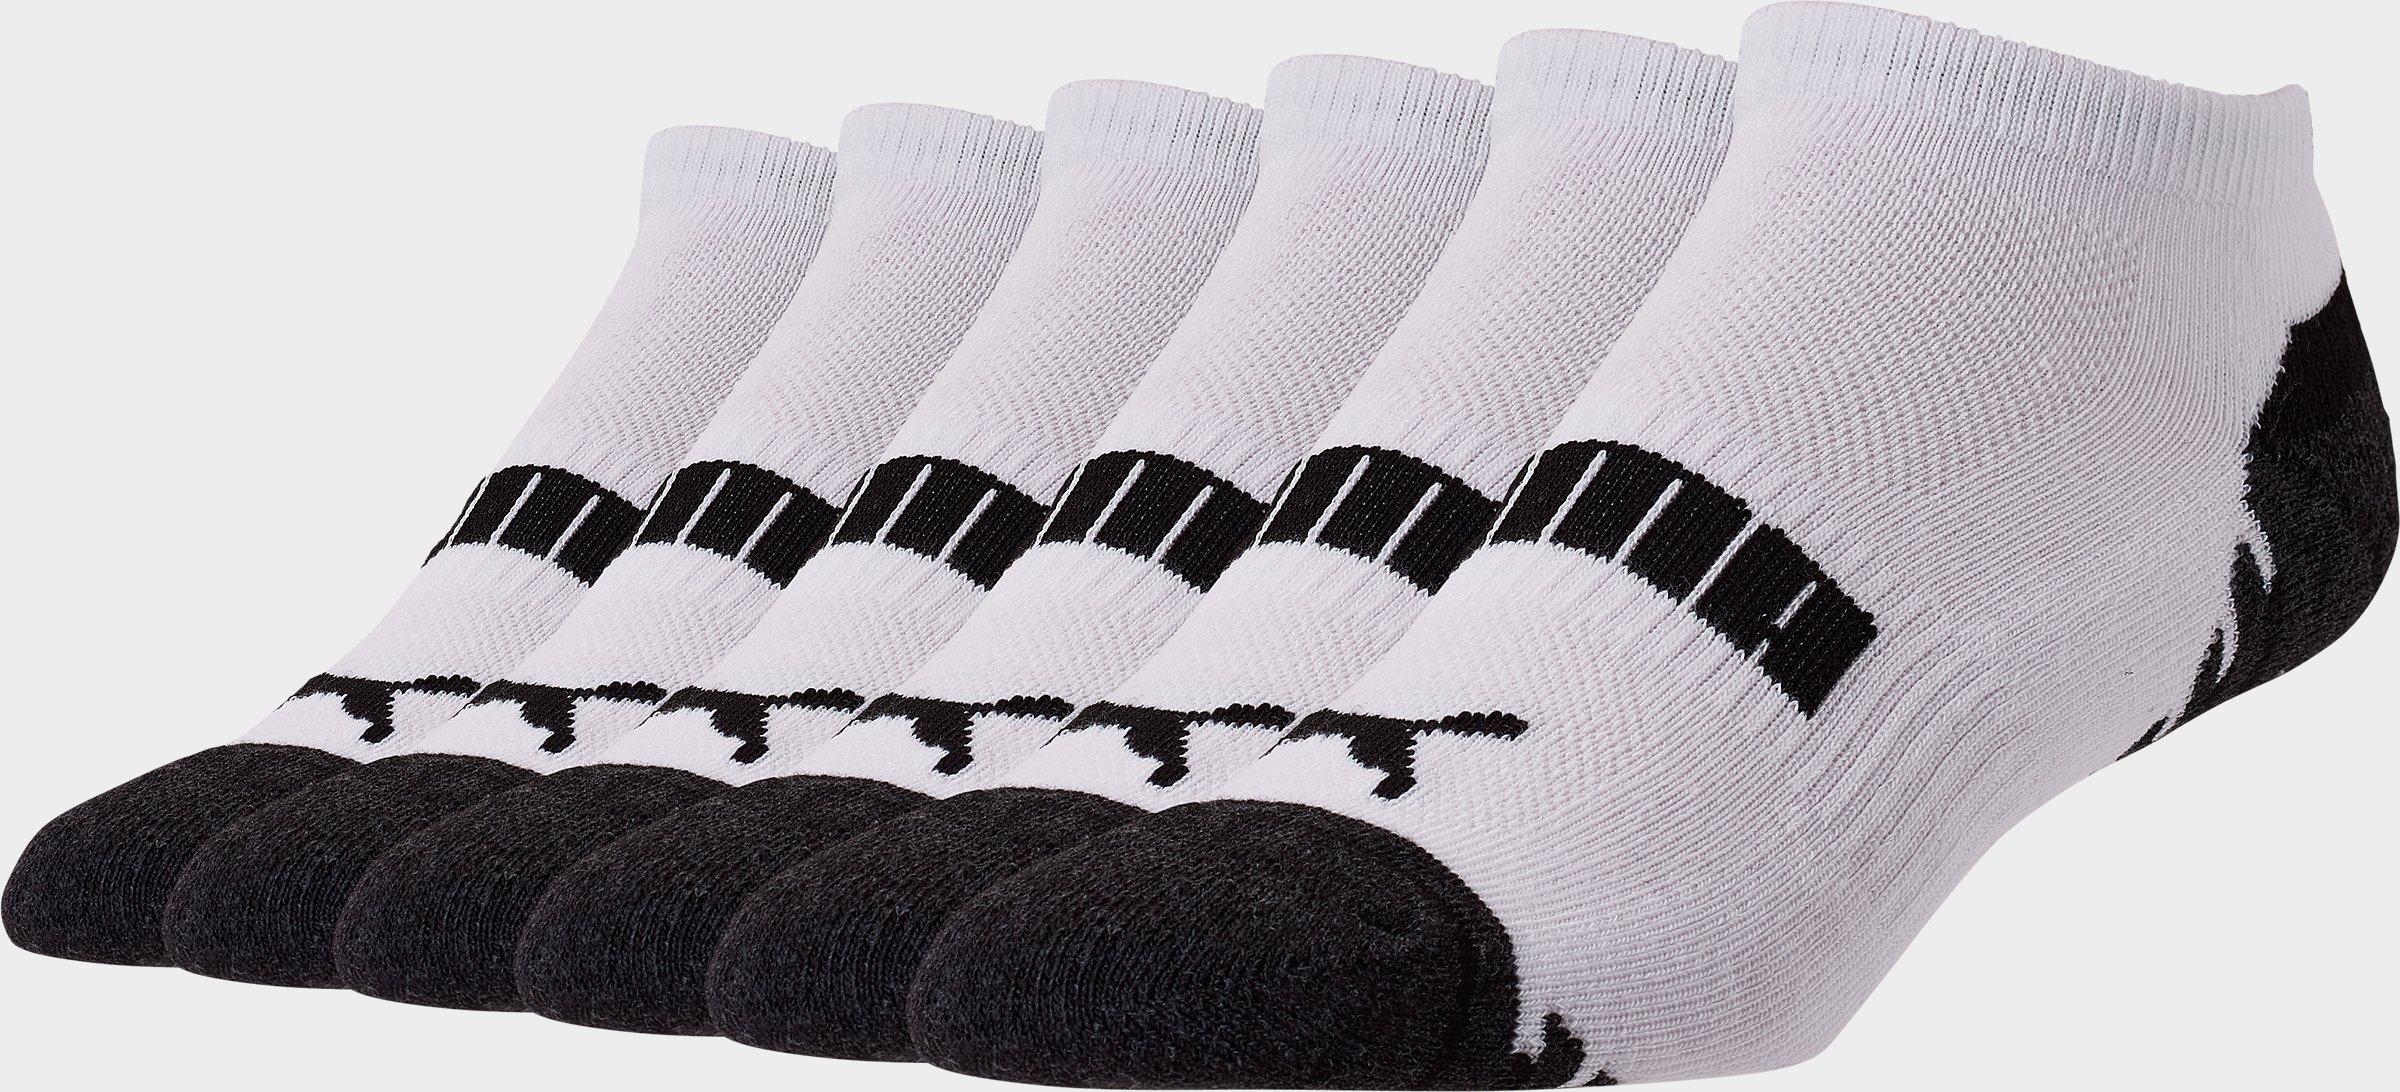 puma men's low cut socks